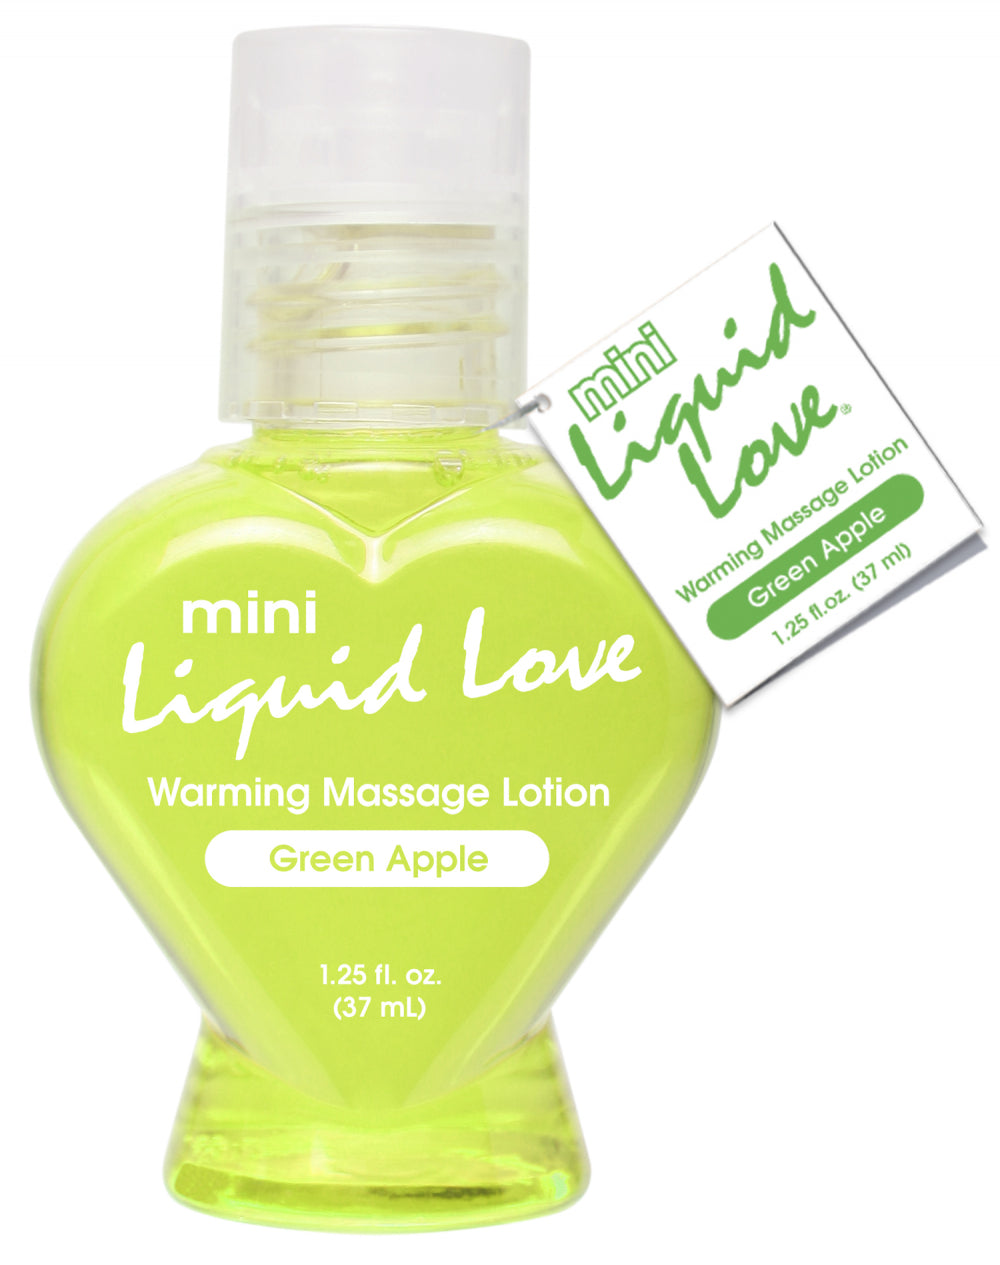 Mini Liquid Love Warming Massage Lotion Green Apple